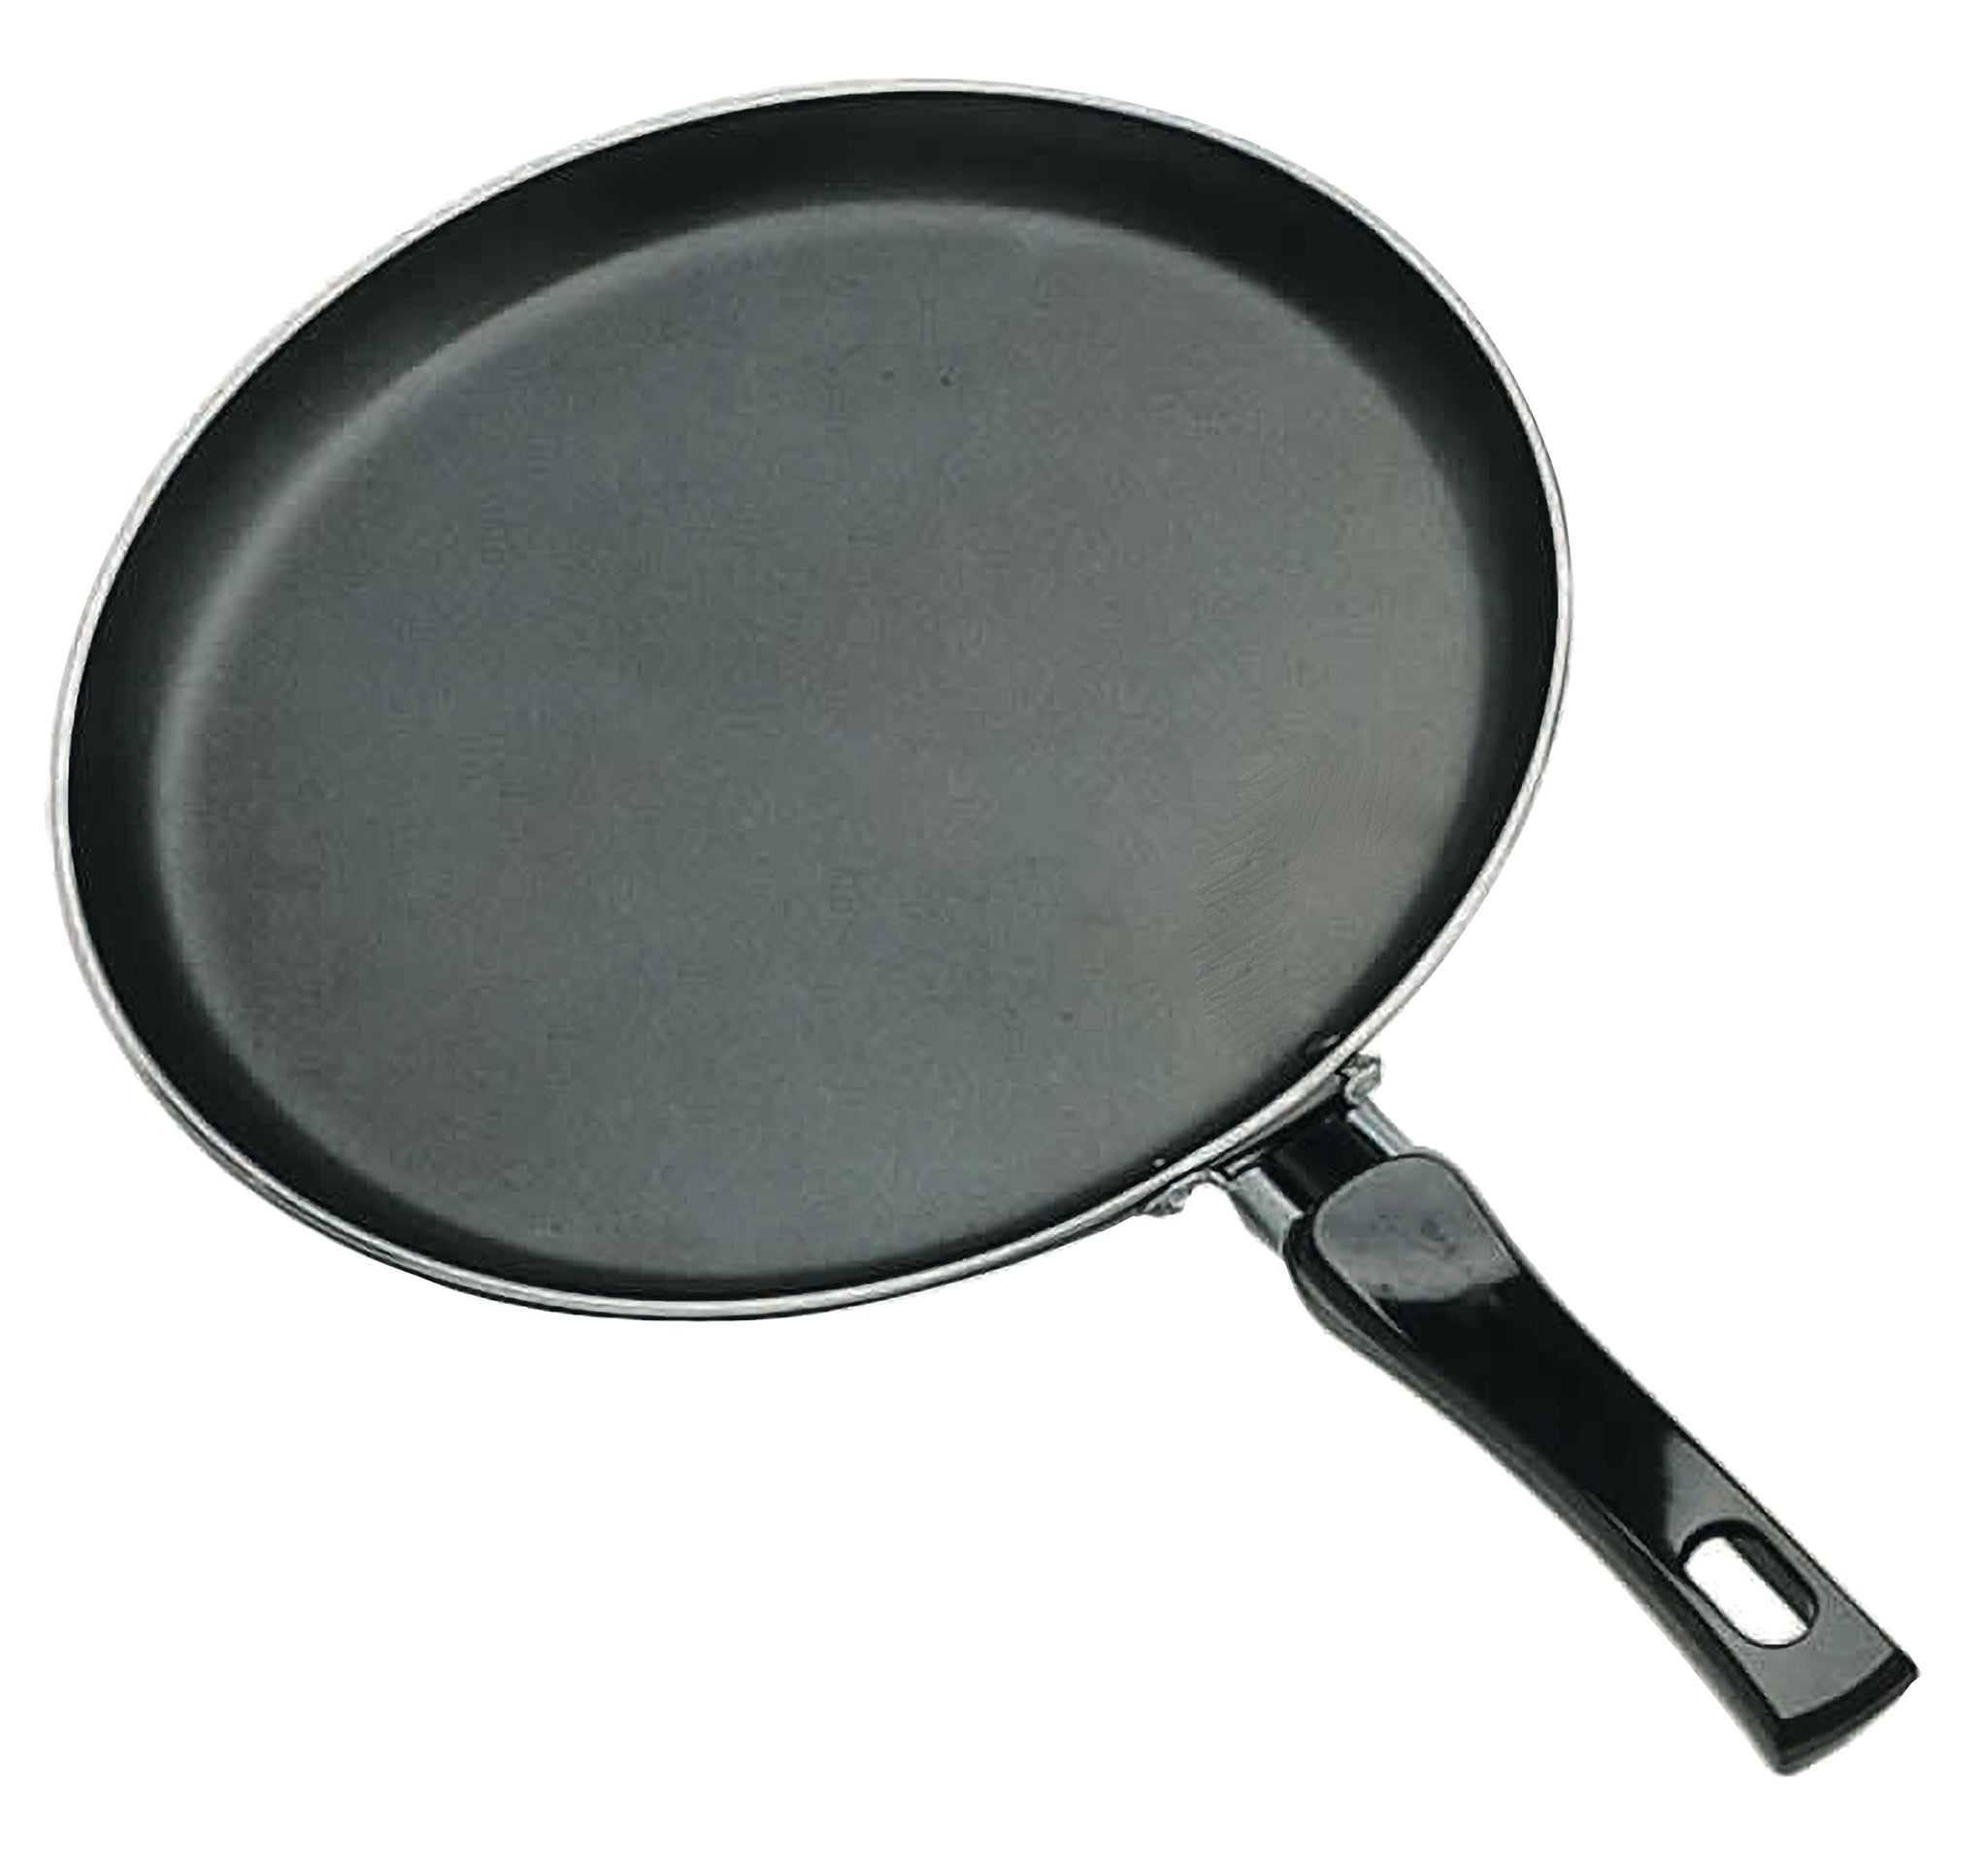 24cm Crepe / Pancake Pan